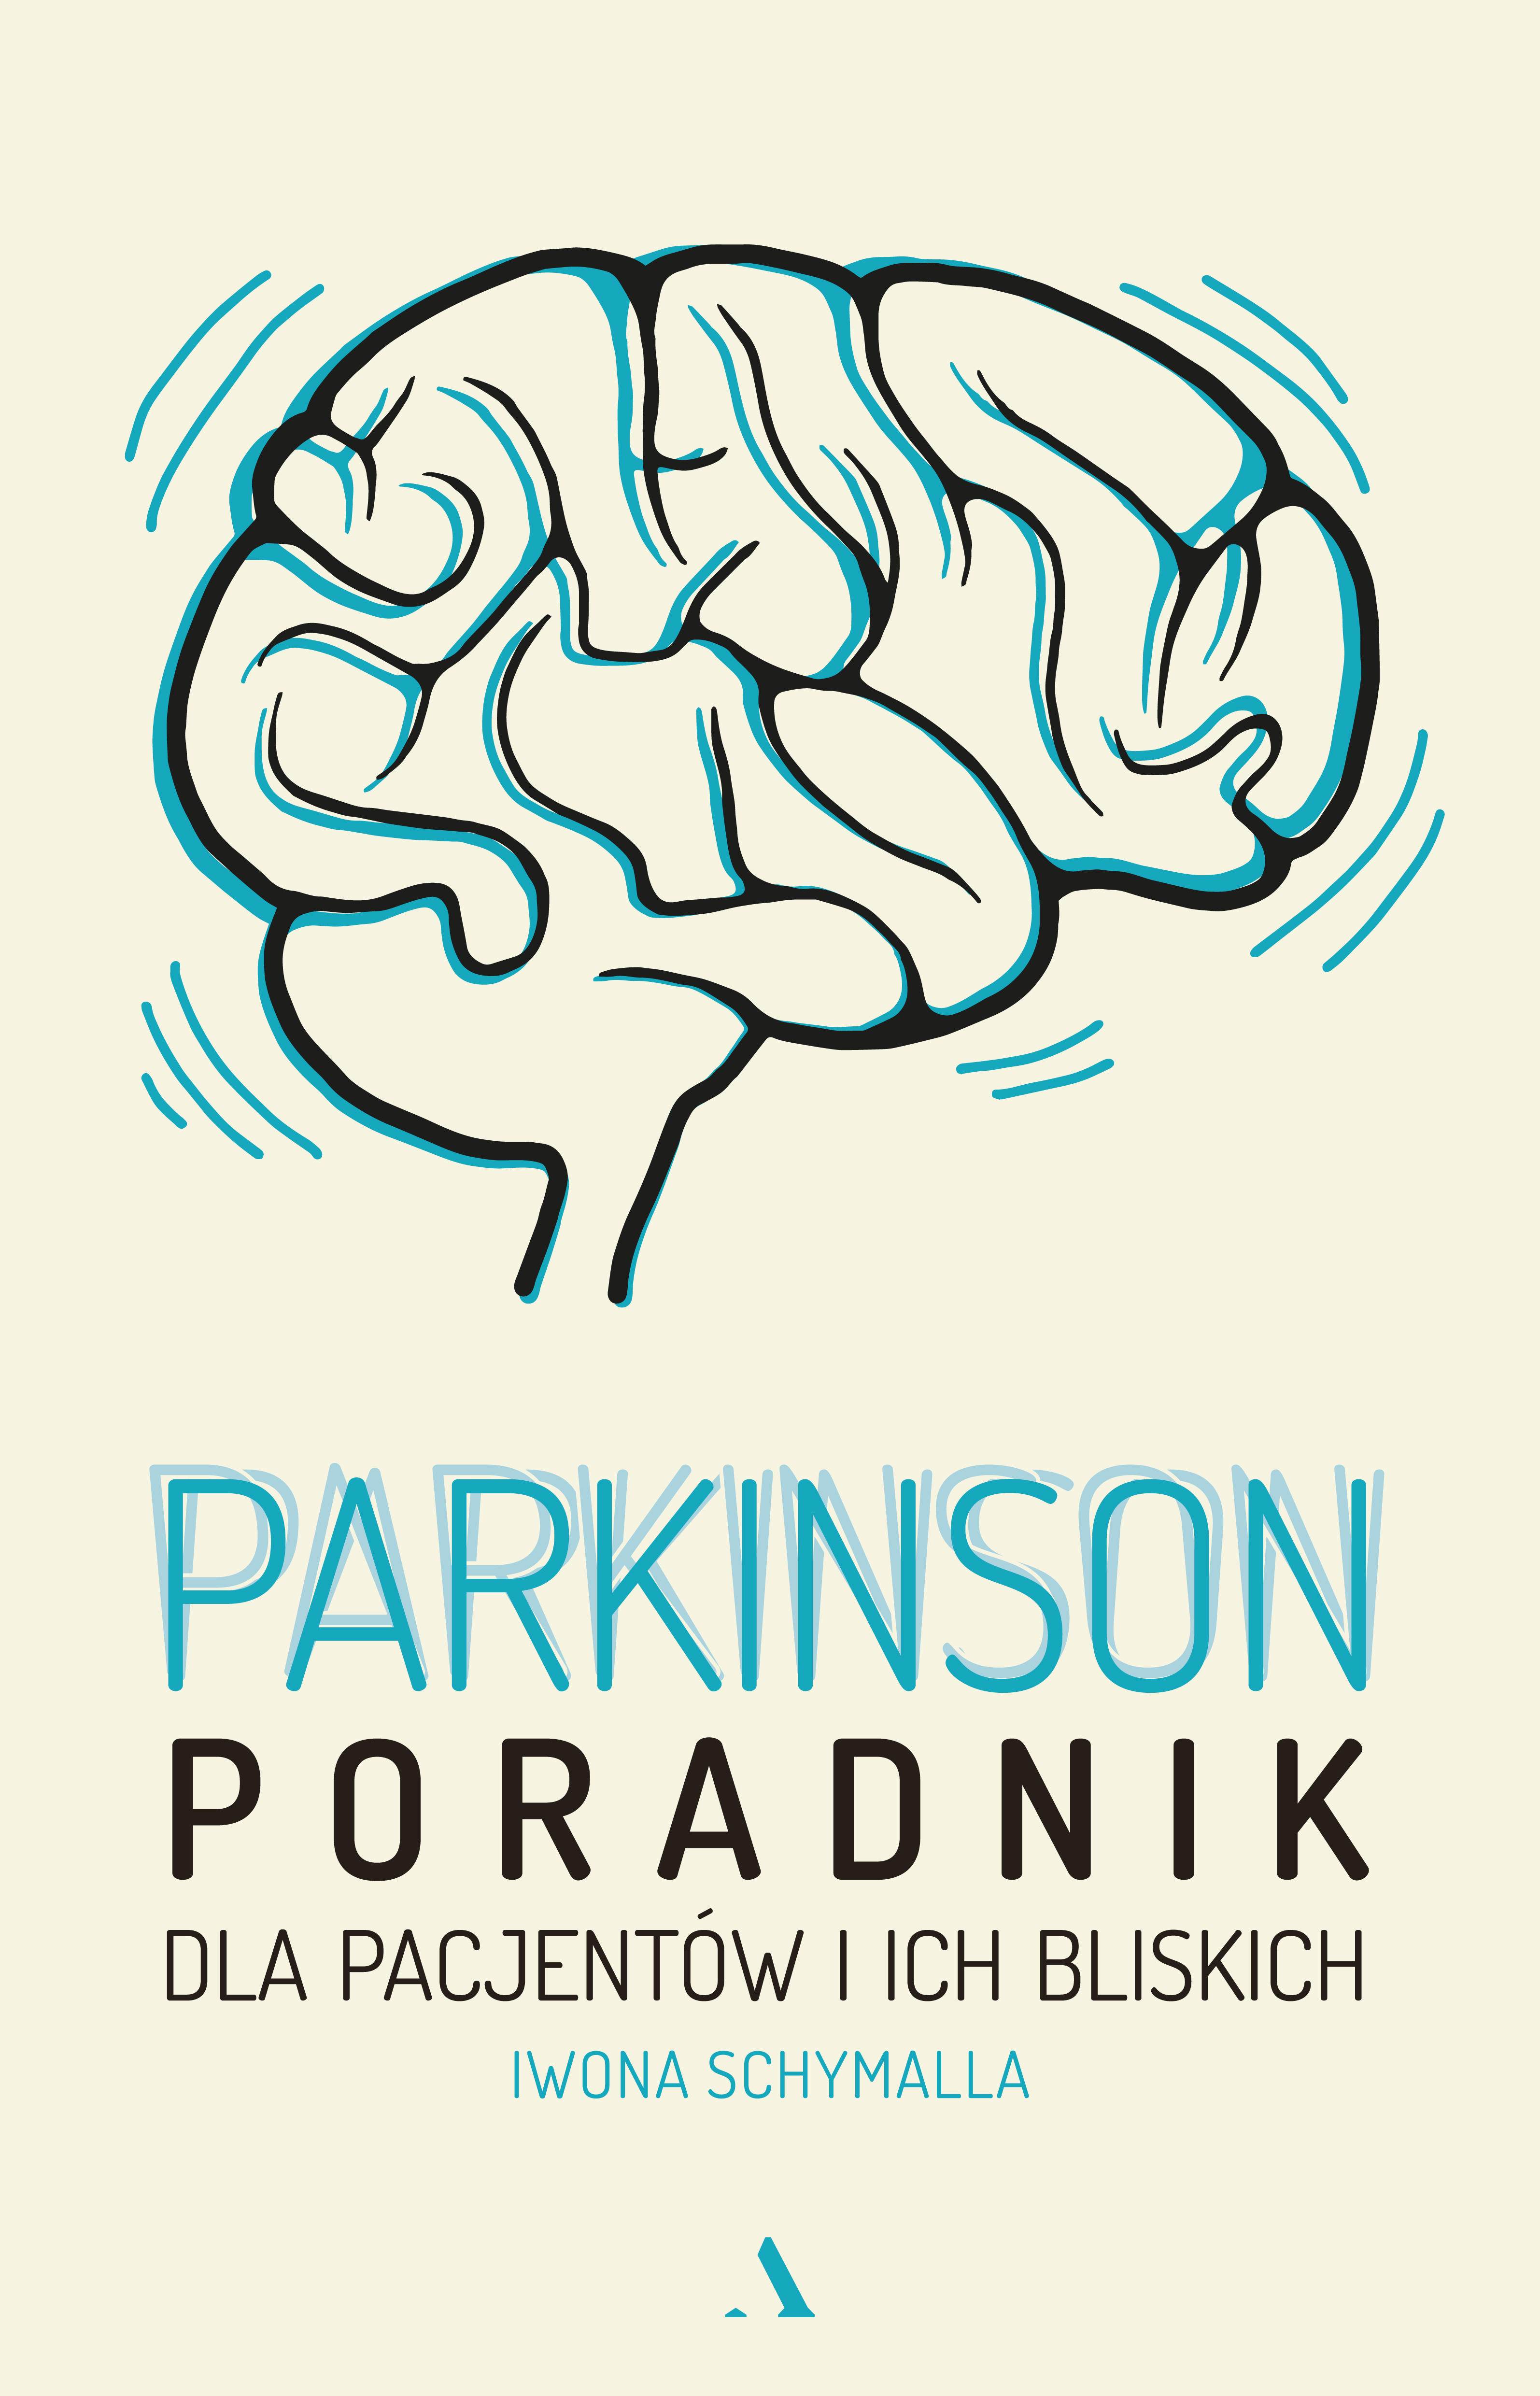 okładka książki Parkinson. Poradnik dla pacjentów